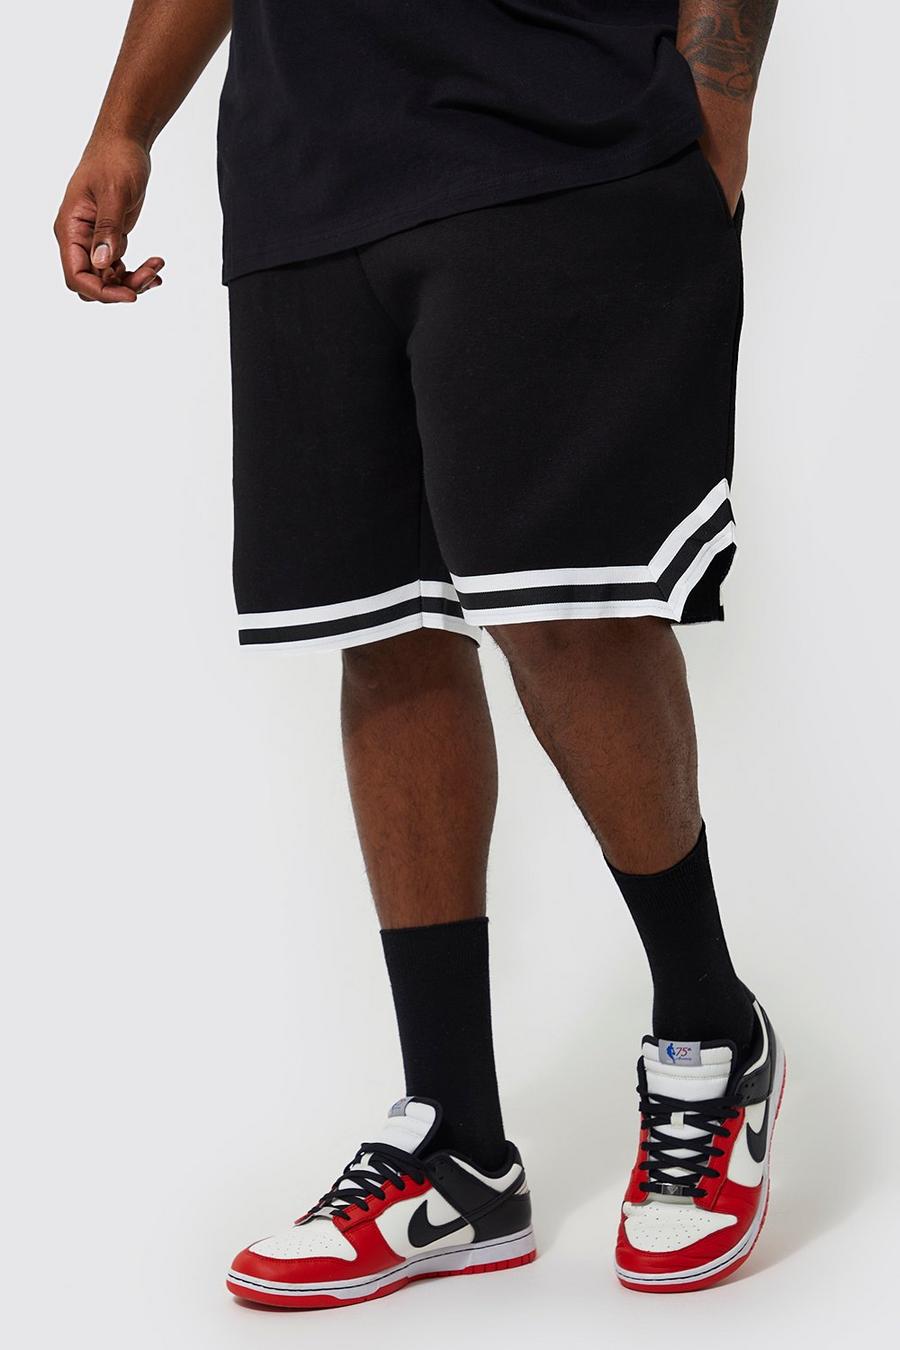 Pantalón corto Plus de baloncesto y tela jersey con cinta, Black nero